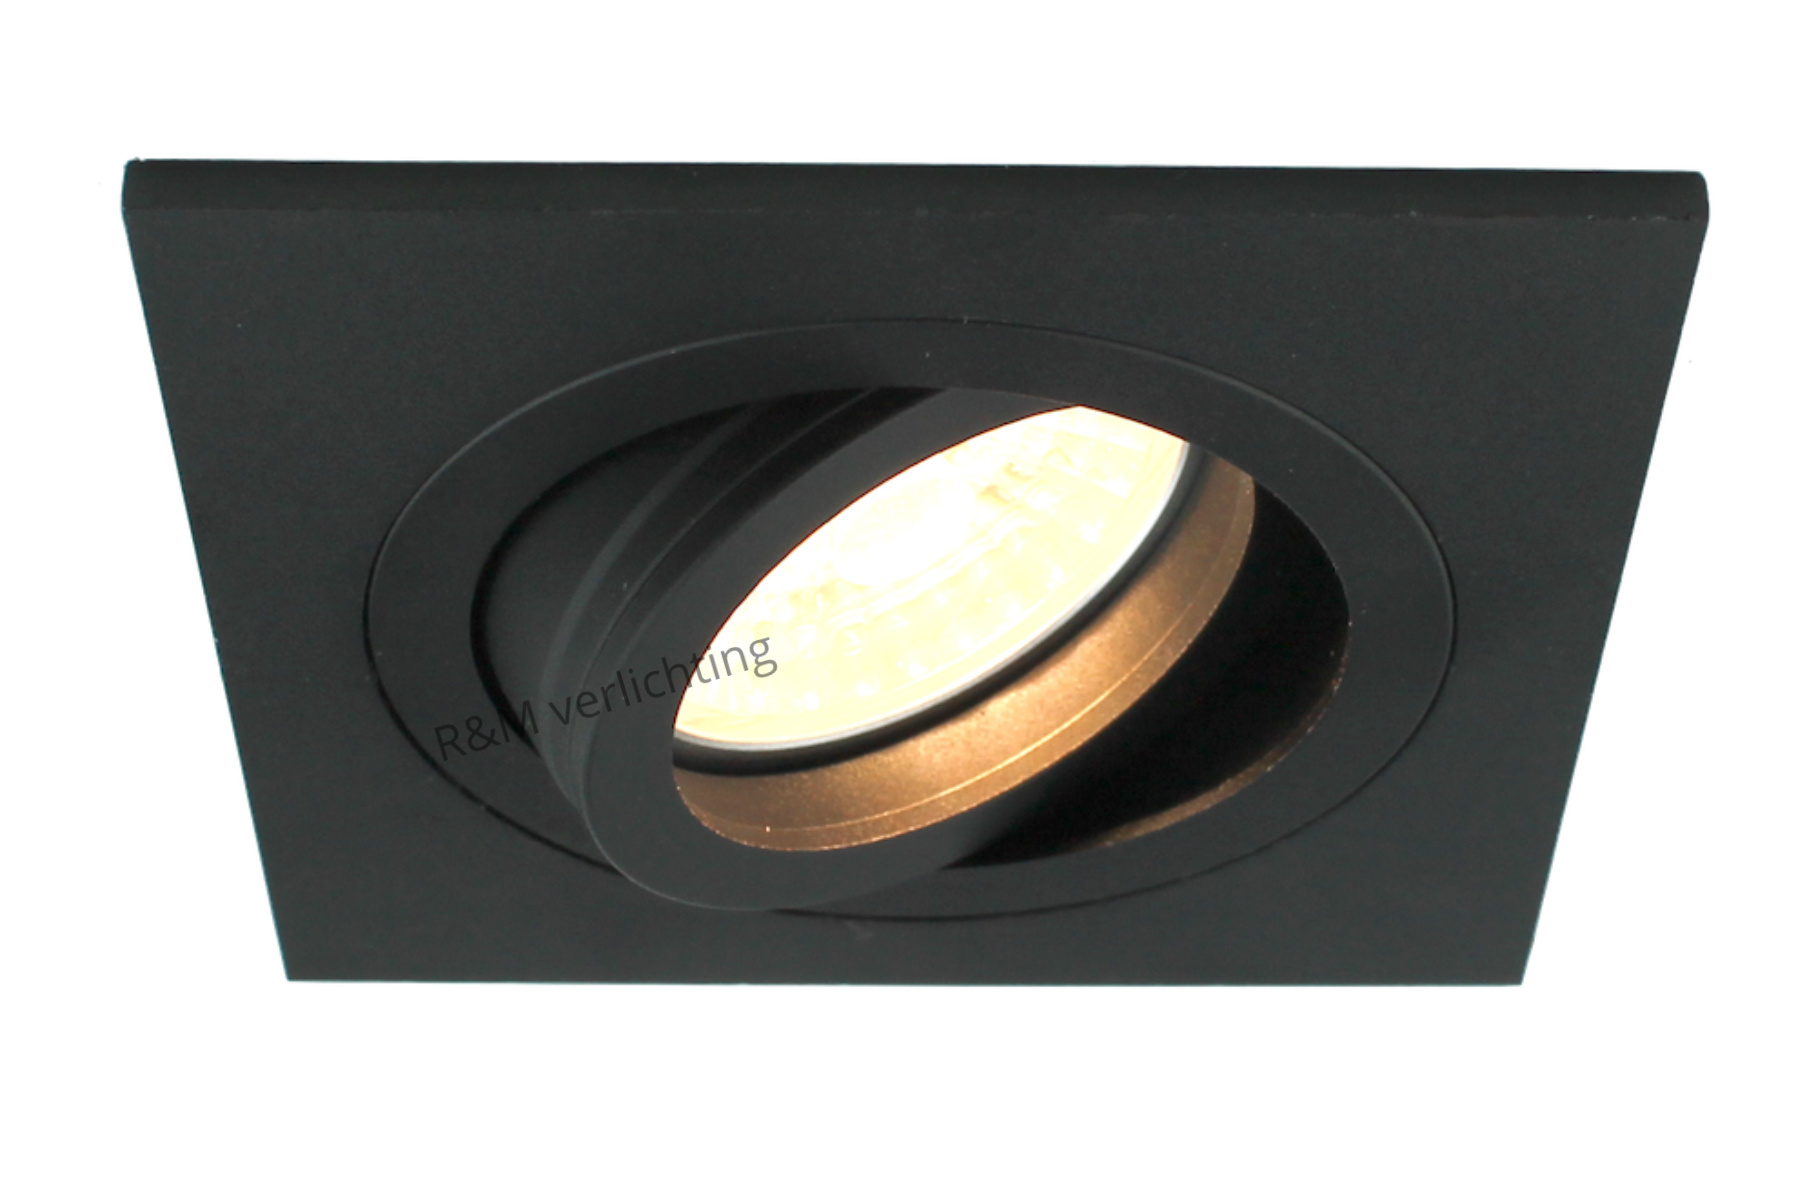 vertrouwen bang Manuscript Vierkante inbouwspot zwart voor GU10 LED lamp dimbaar - R&M Verlichting